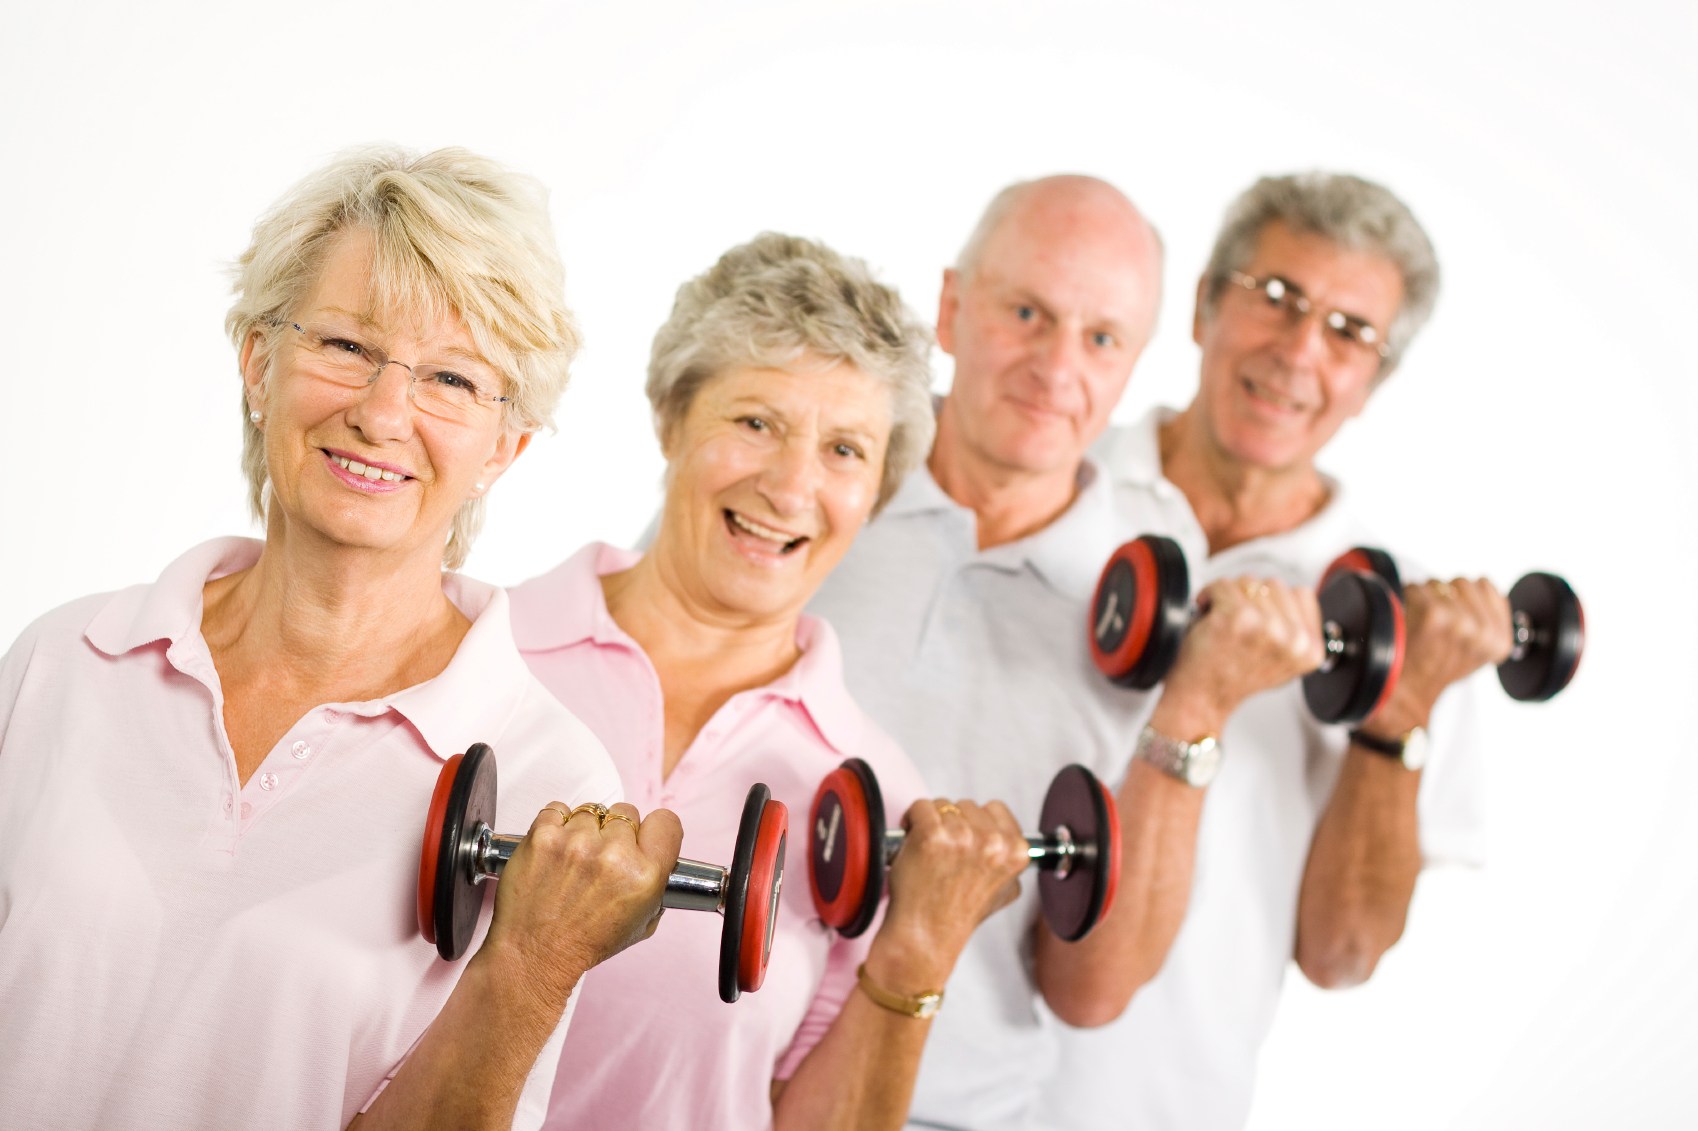 El “músculo”, protagonista de la vida del adulto mayor (y del resto)